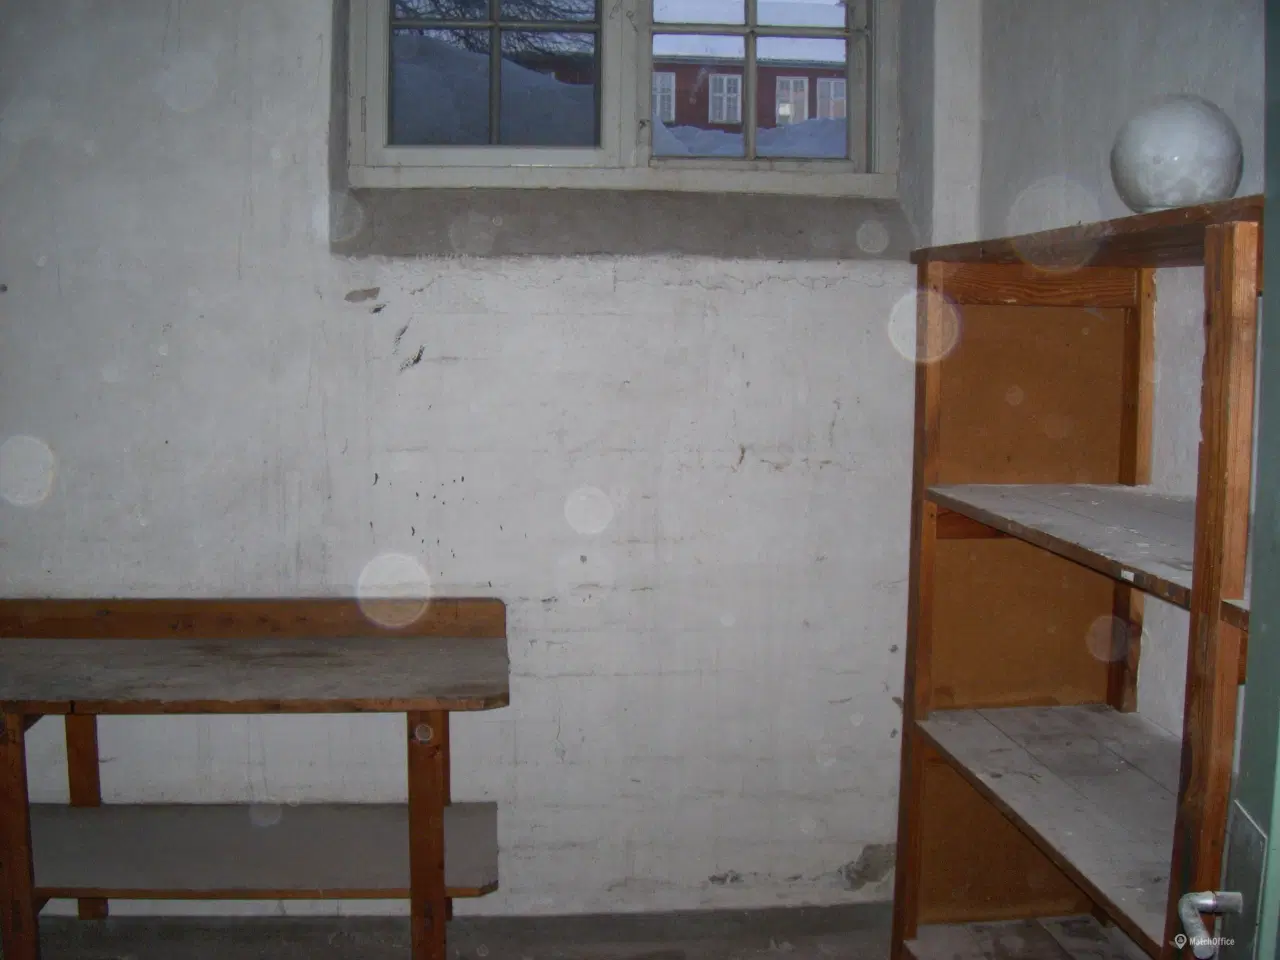 Billede 4 - Depotrum udlejes på den gamle Randers Kaserne